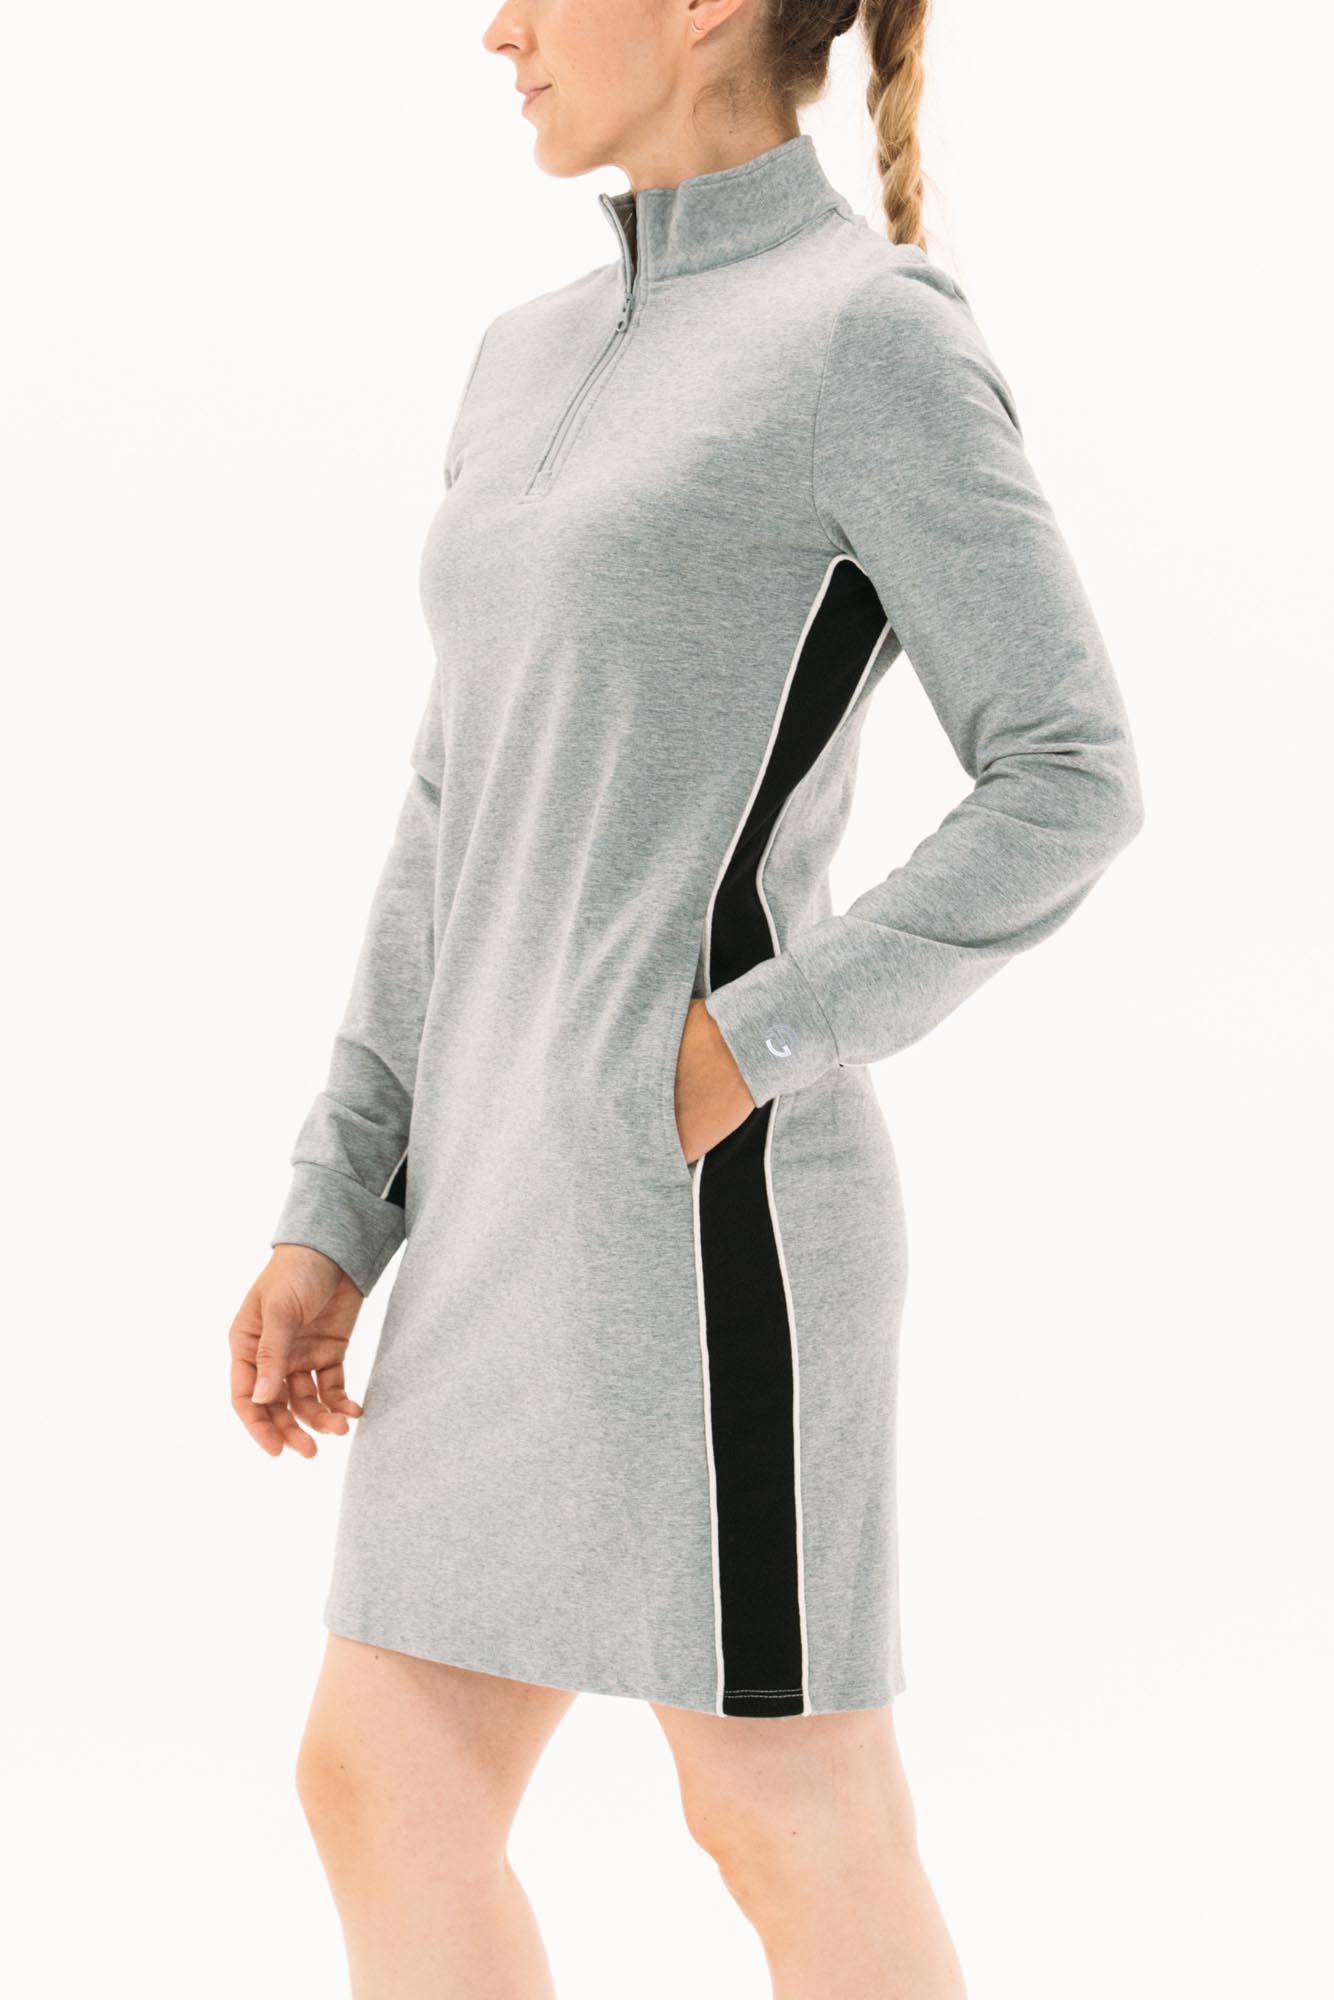 Women's High-Neck Terry Cloth Half Zip Sweatshirt - Women's